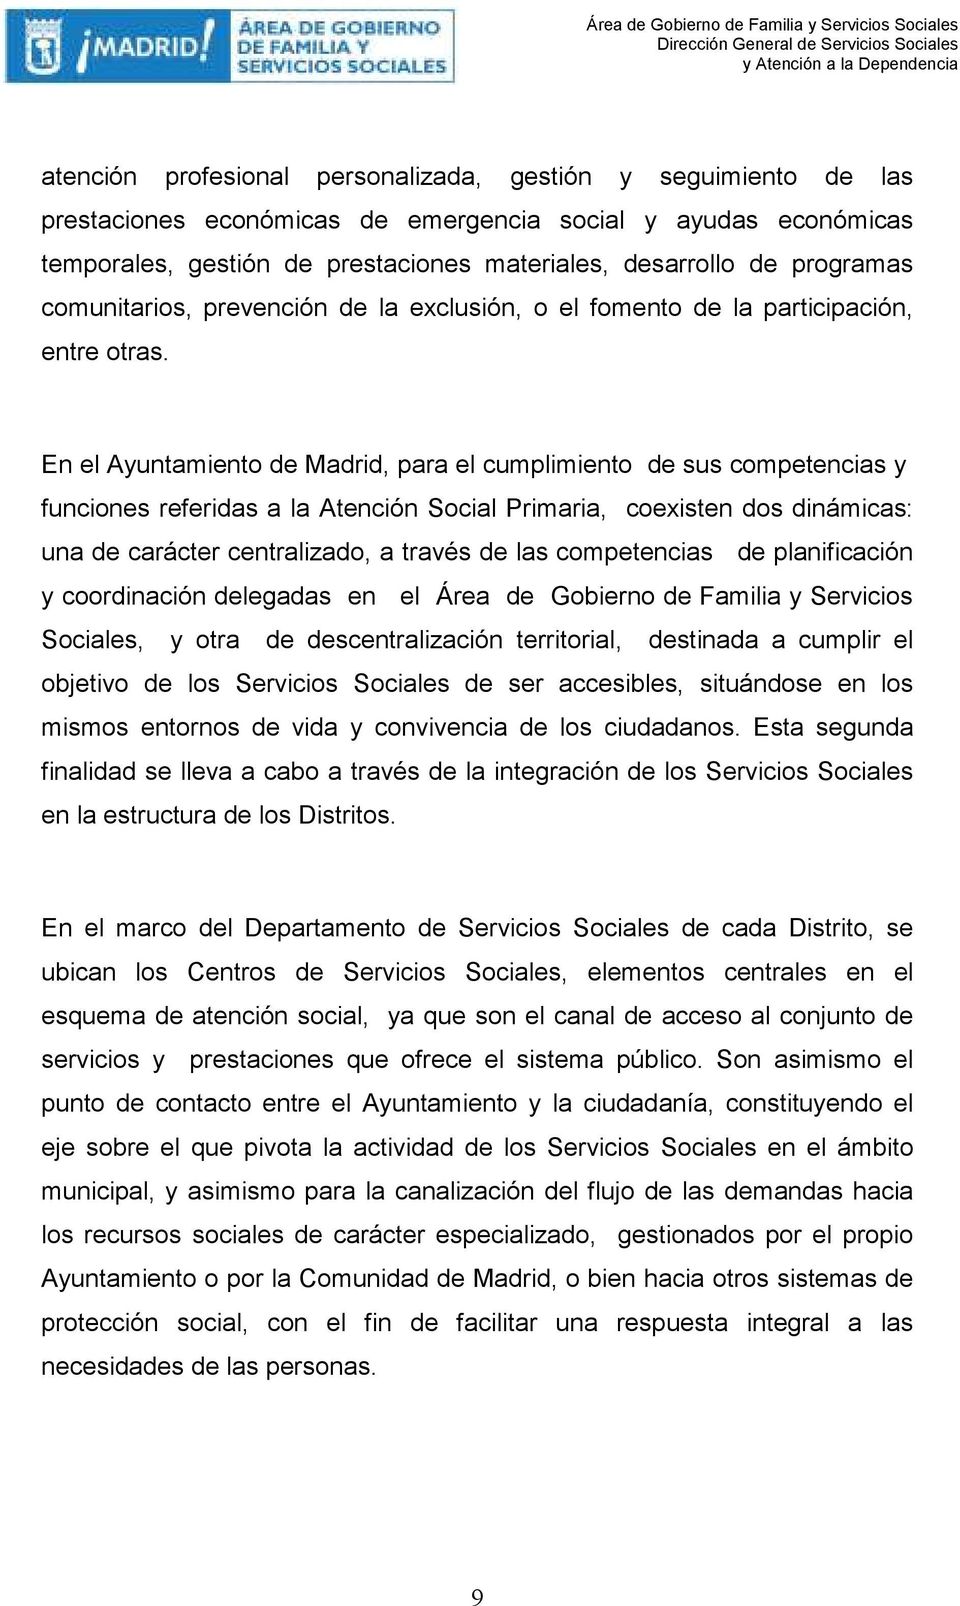 En el Ayuntamiento de Madrid, para el cumplimiento de sus competencias y funciones referidas a la Atención Social Primaria, coexisten dos dinámicas: una de carácter centralizado, a través de las